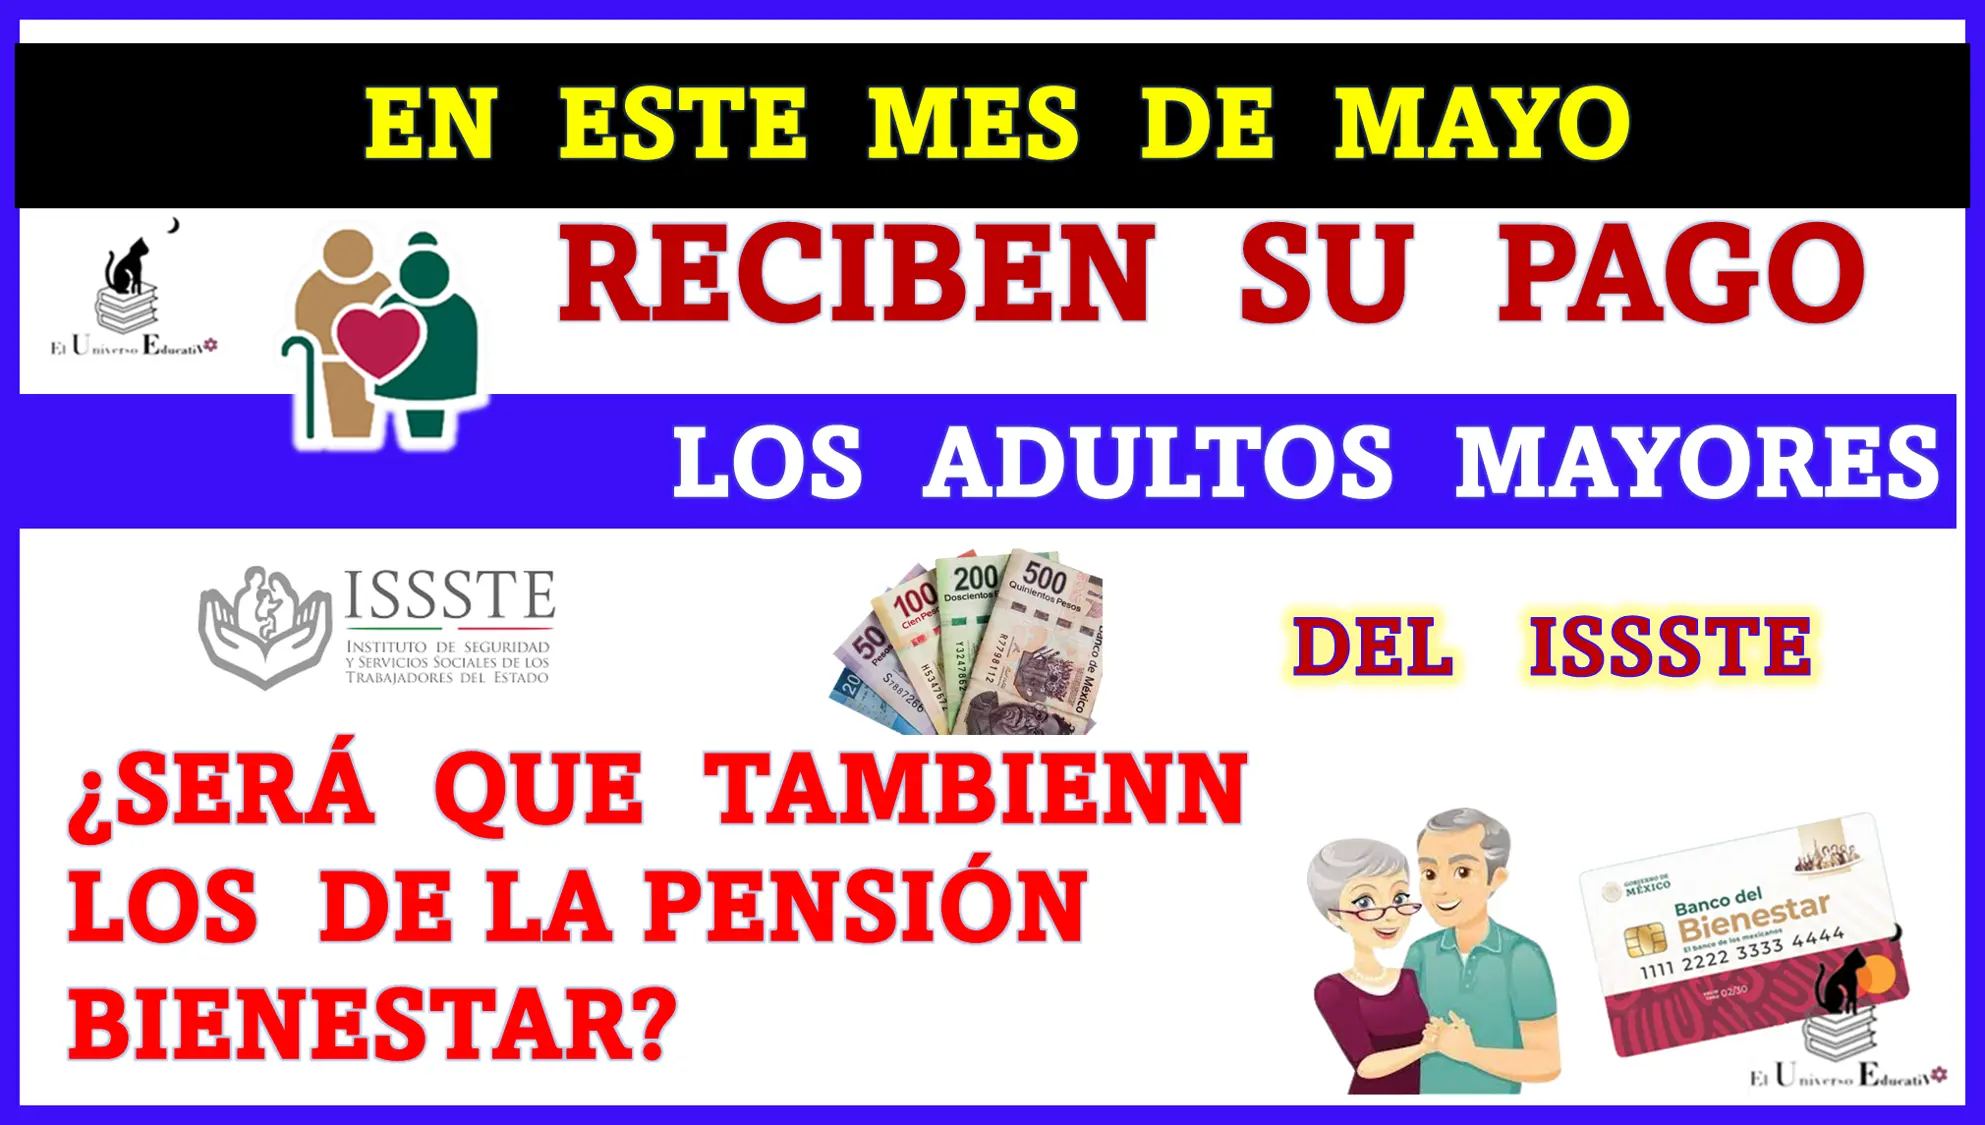 En este mes de mayo reciben su pago los Adultos Mayores del ISSSTE ¿Será que también los de la Pensión para el Bienestar?